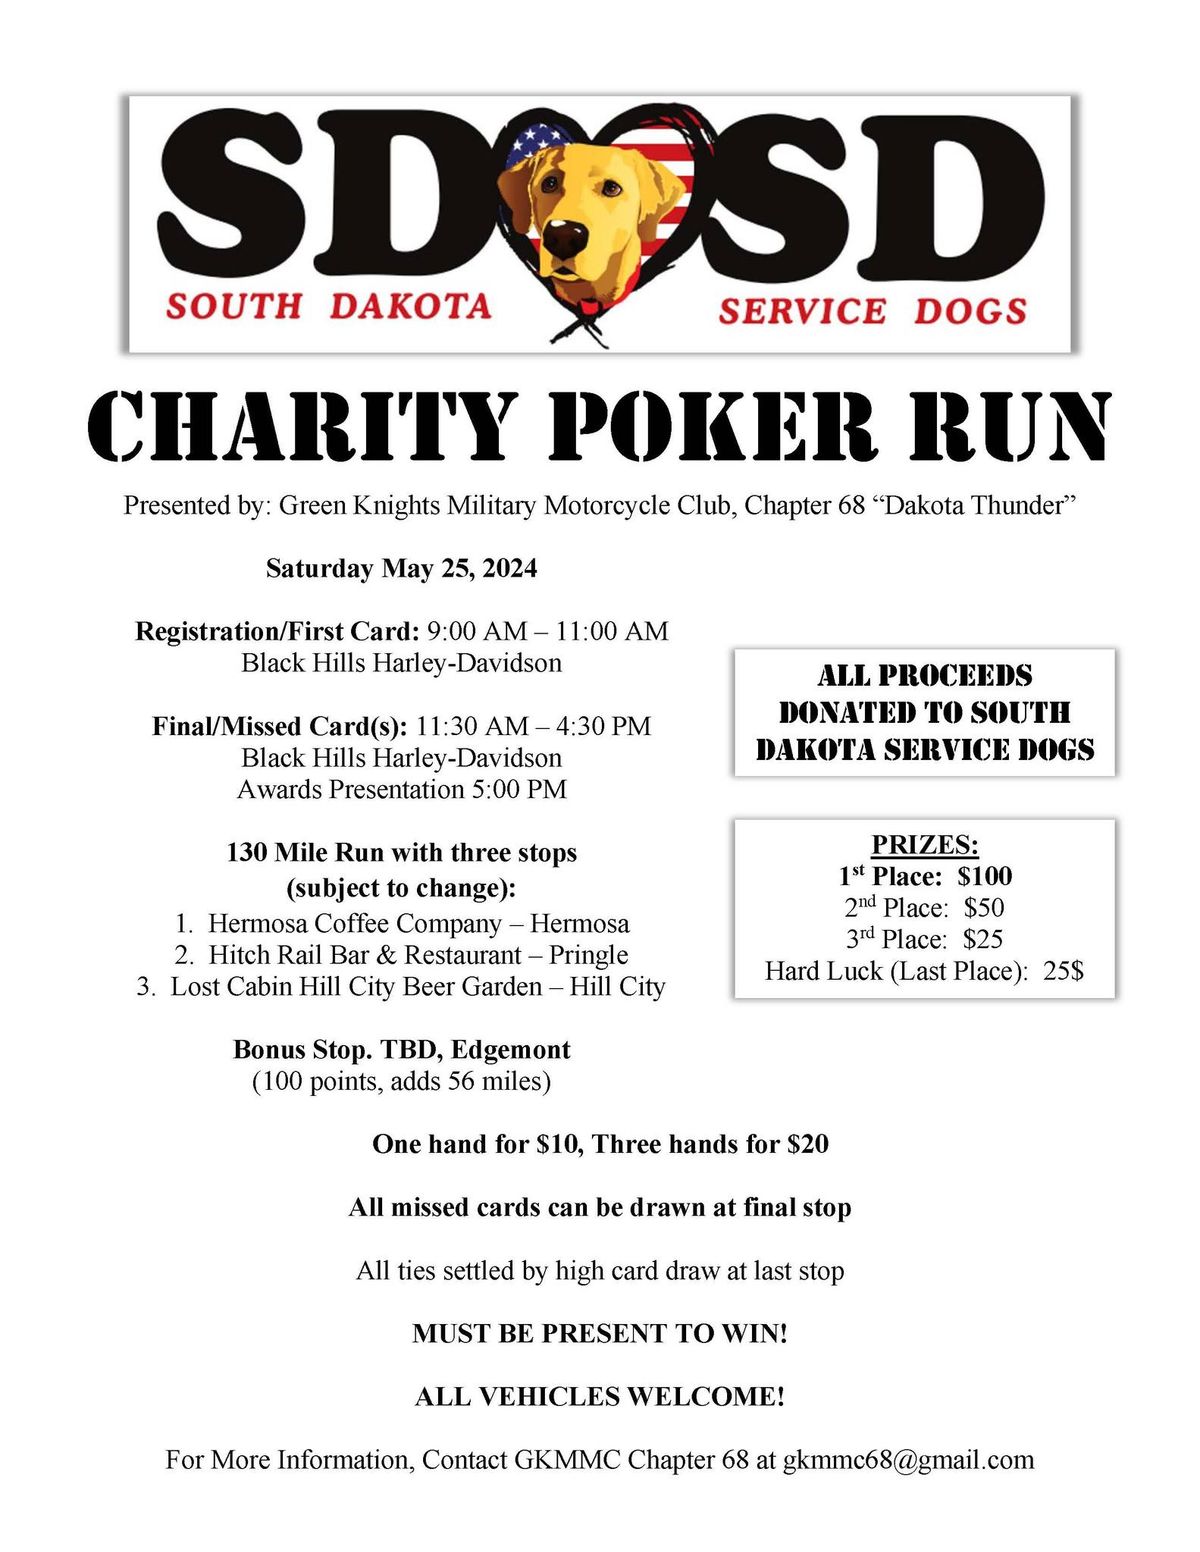 SD Service Dogs Charity Poker Run